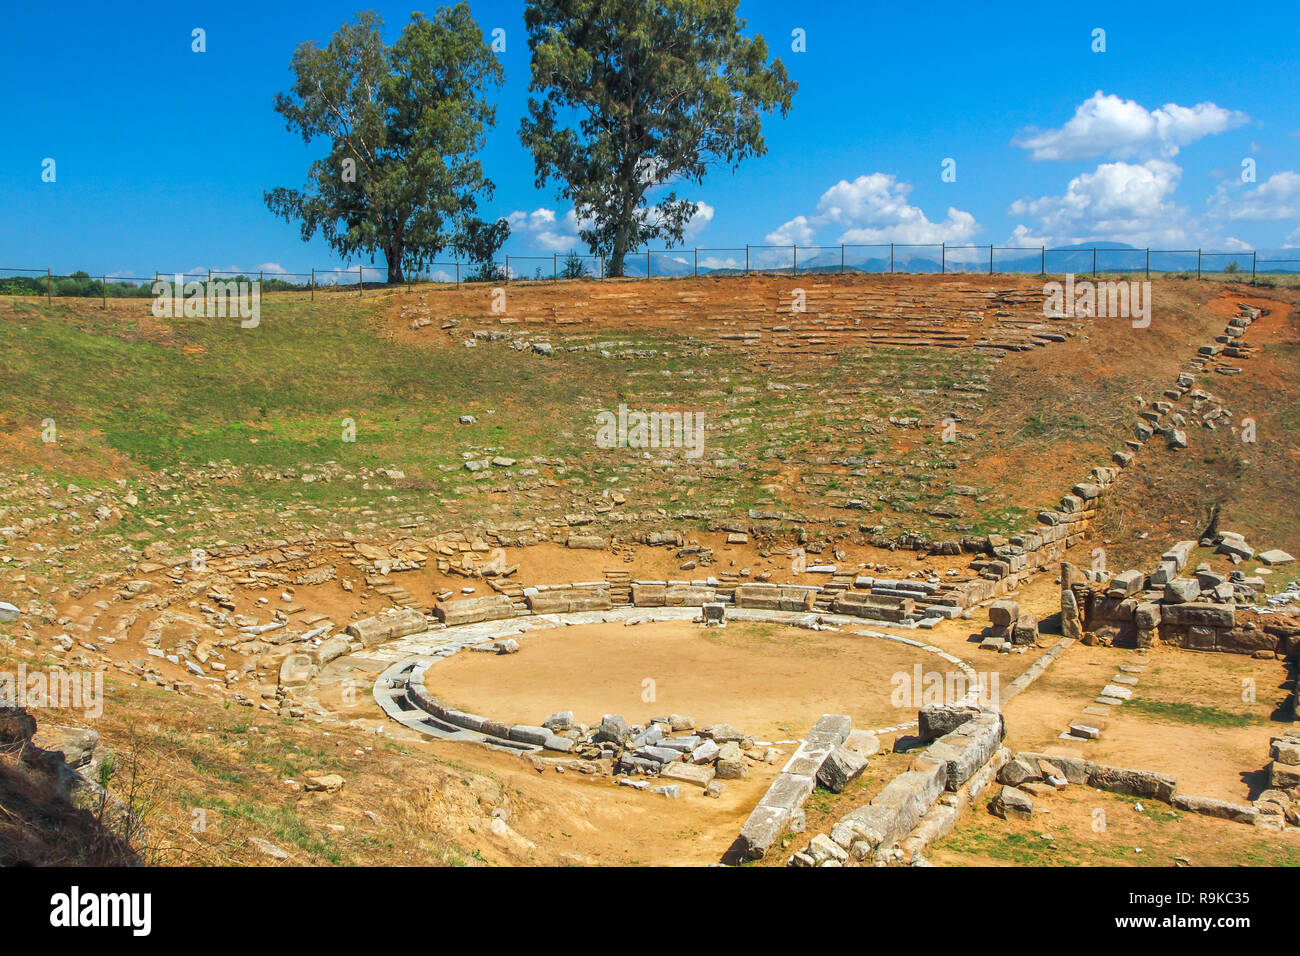 L'ancien théâtre grec de Stratos, dans la région, préfecture Etoloakarnania Agrinio, Grèce centrale. Banque D'Images